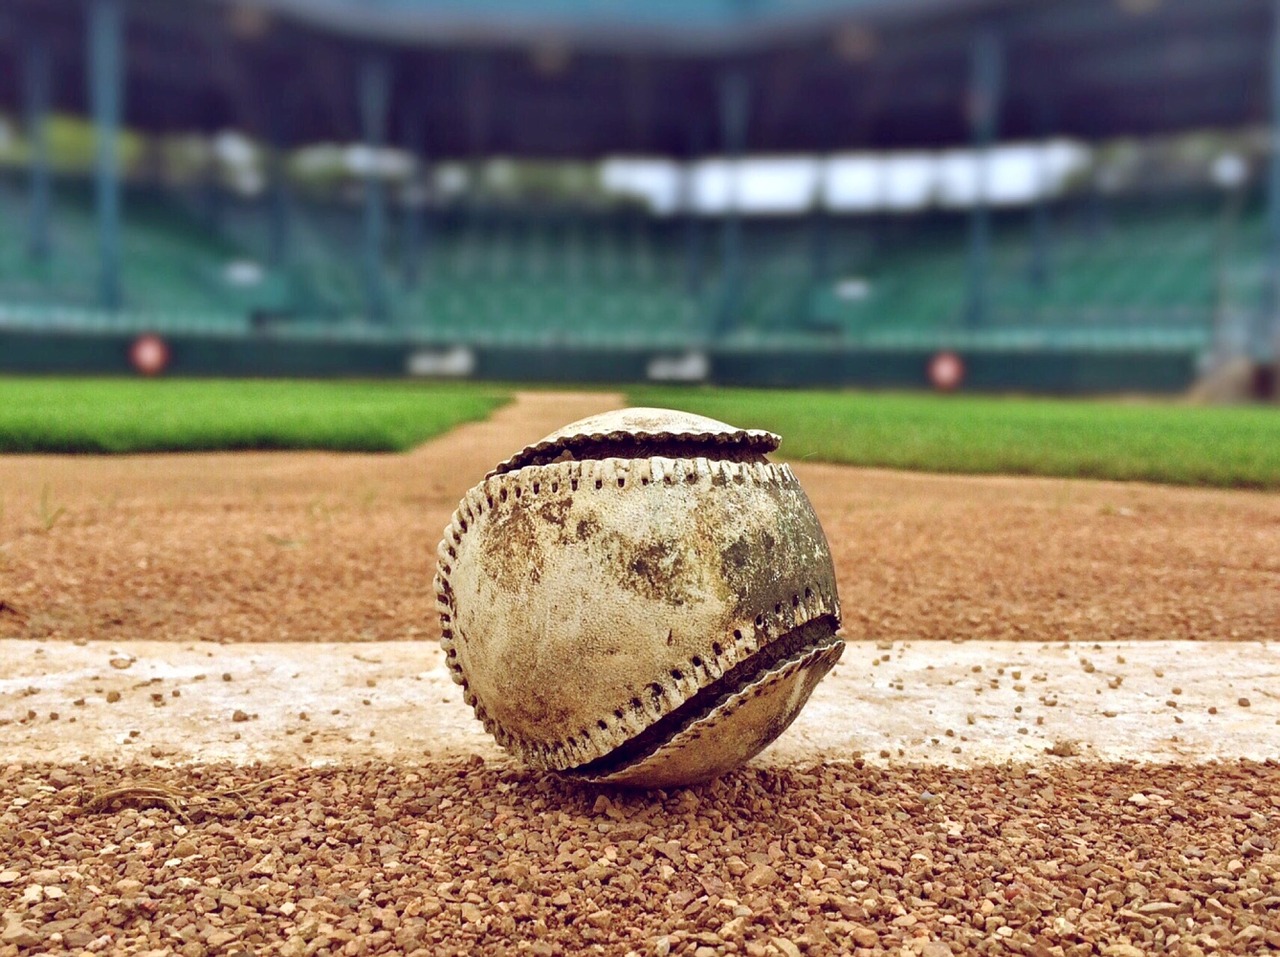 Season in review: 2016-17 Cascades baseball